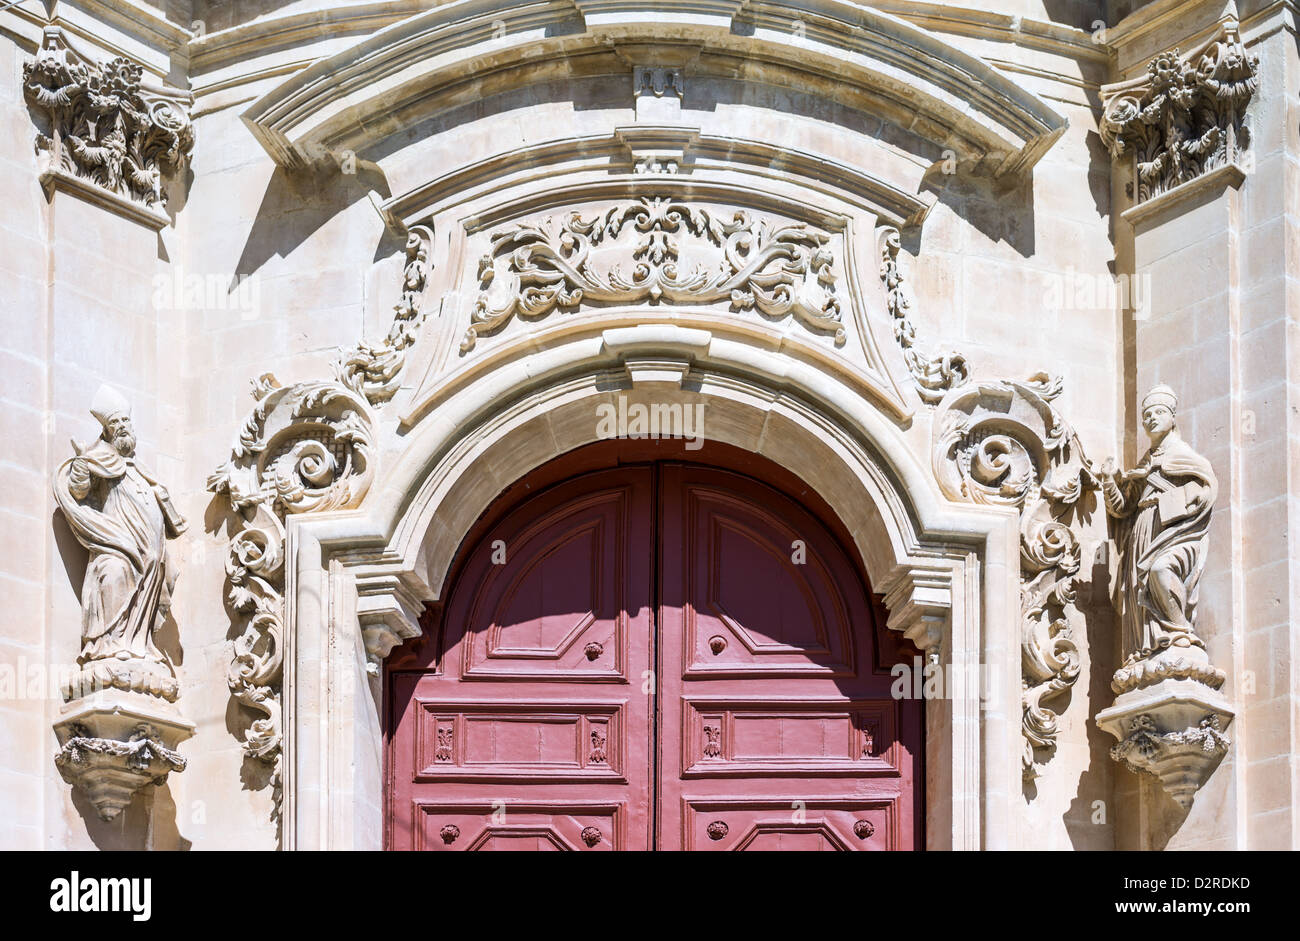 Italy, Sicily,Ragusa,Ibla, the facade detail of the San Giuseppe church Stock Photo